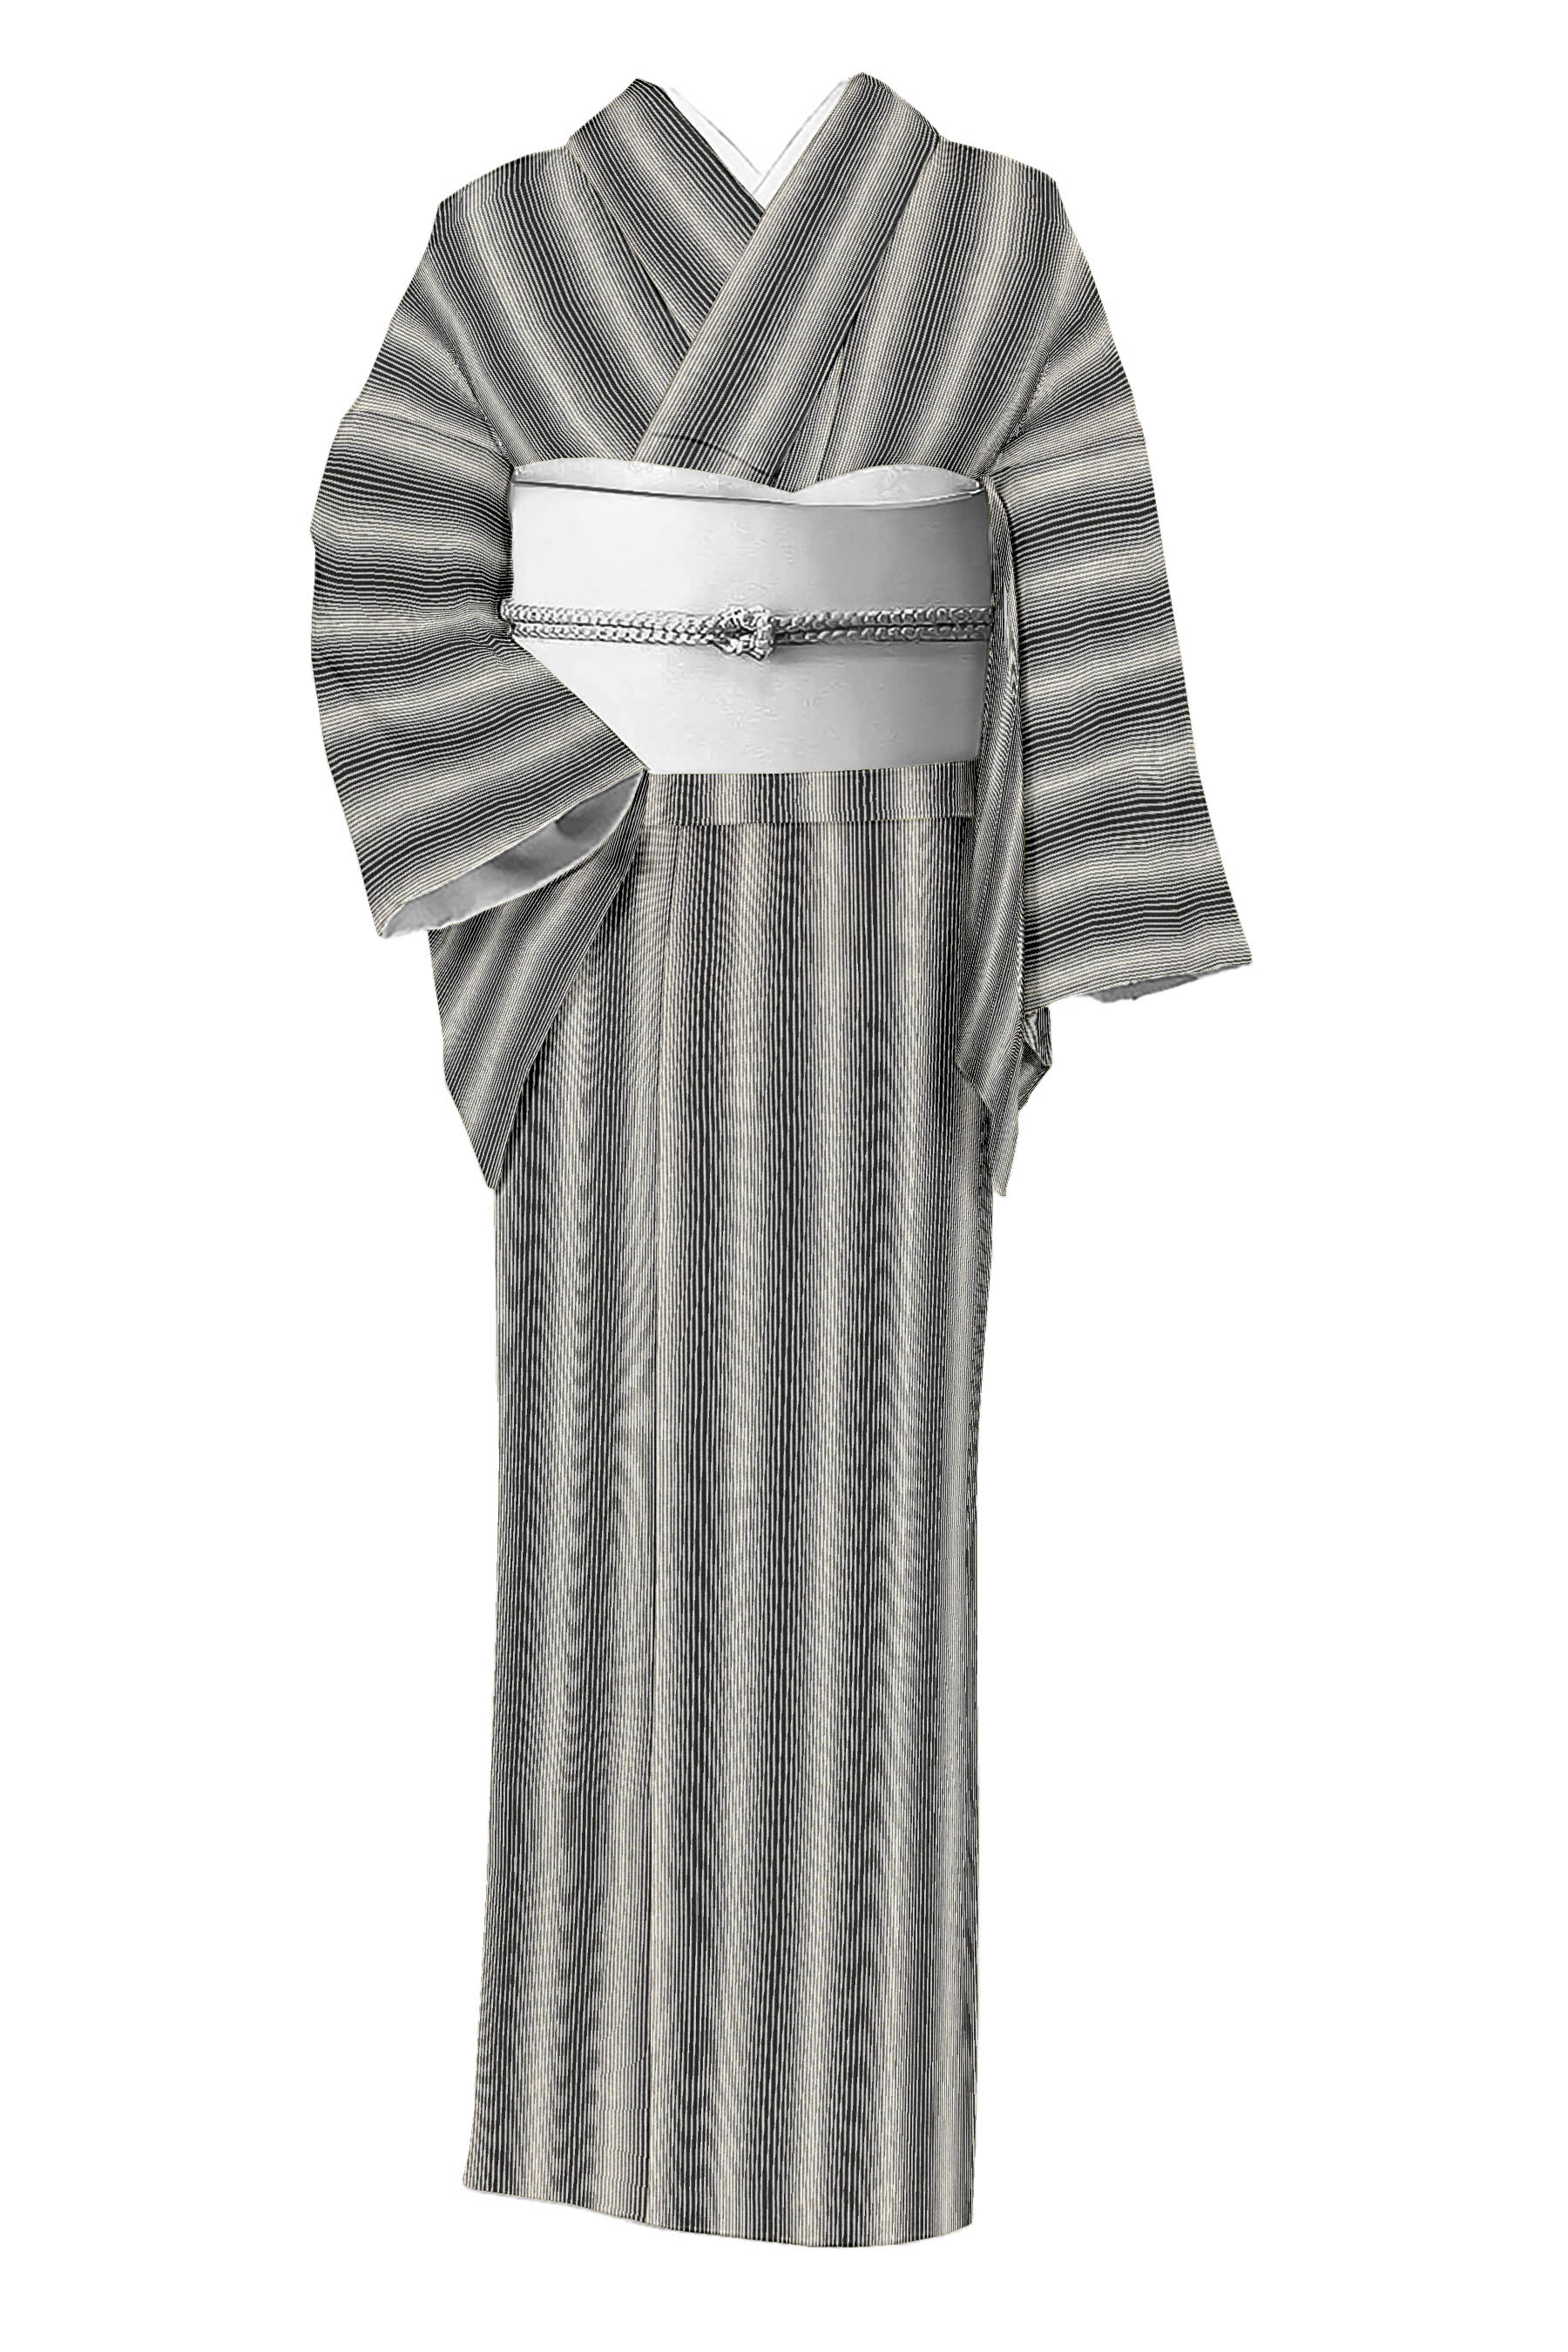 2259)着物 反物 駒絽 人間国宝児玉博 正絹 着尺幅約36cm - 着物